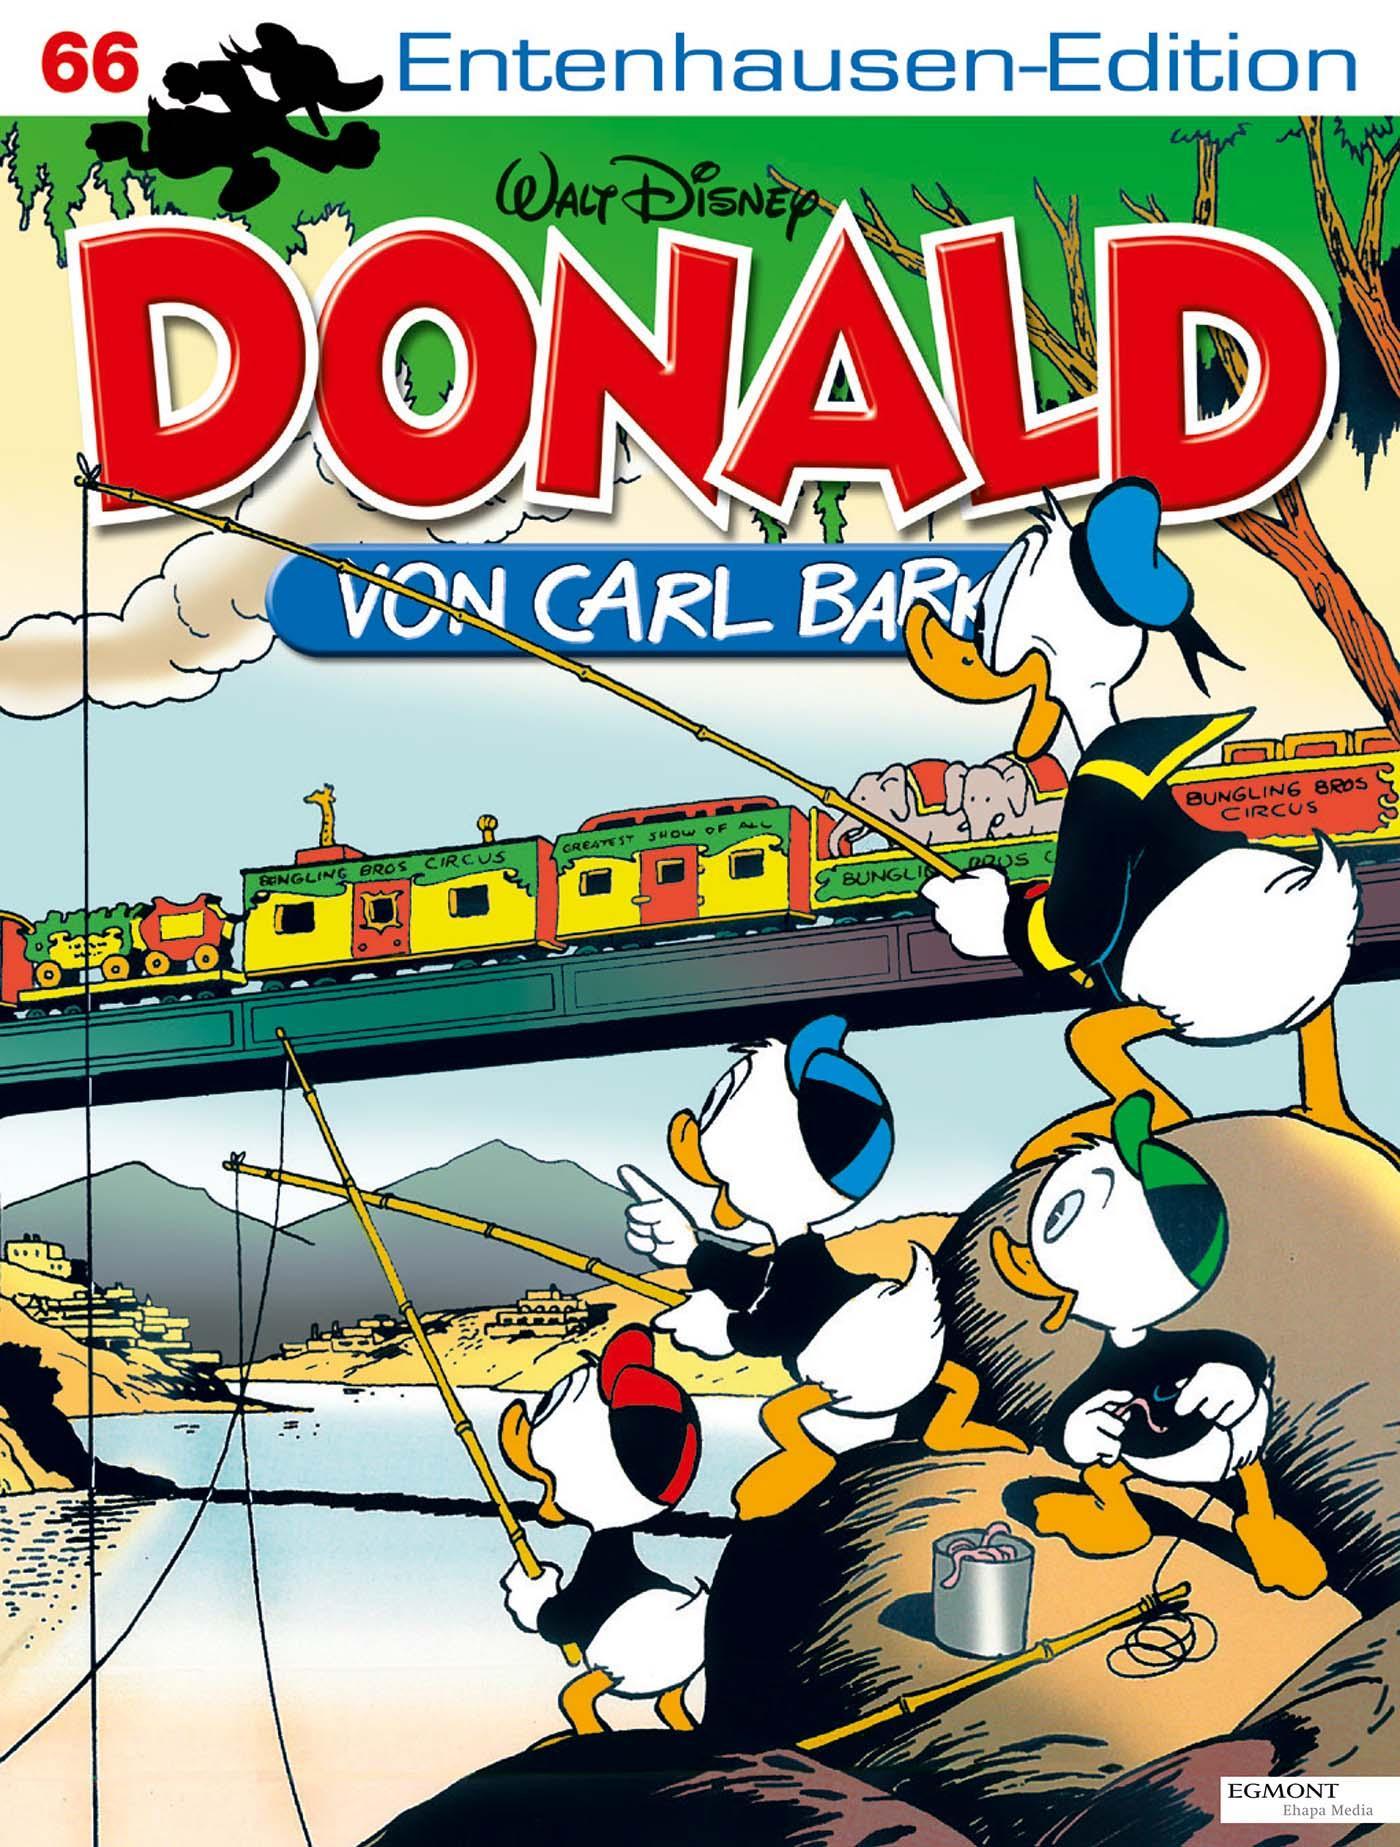 64 ungelesen Donald Duck Entenhausen-Edition von Carl Barks Nr 